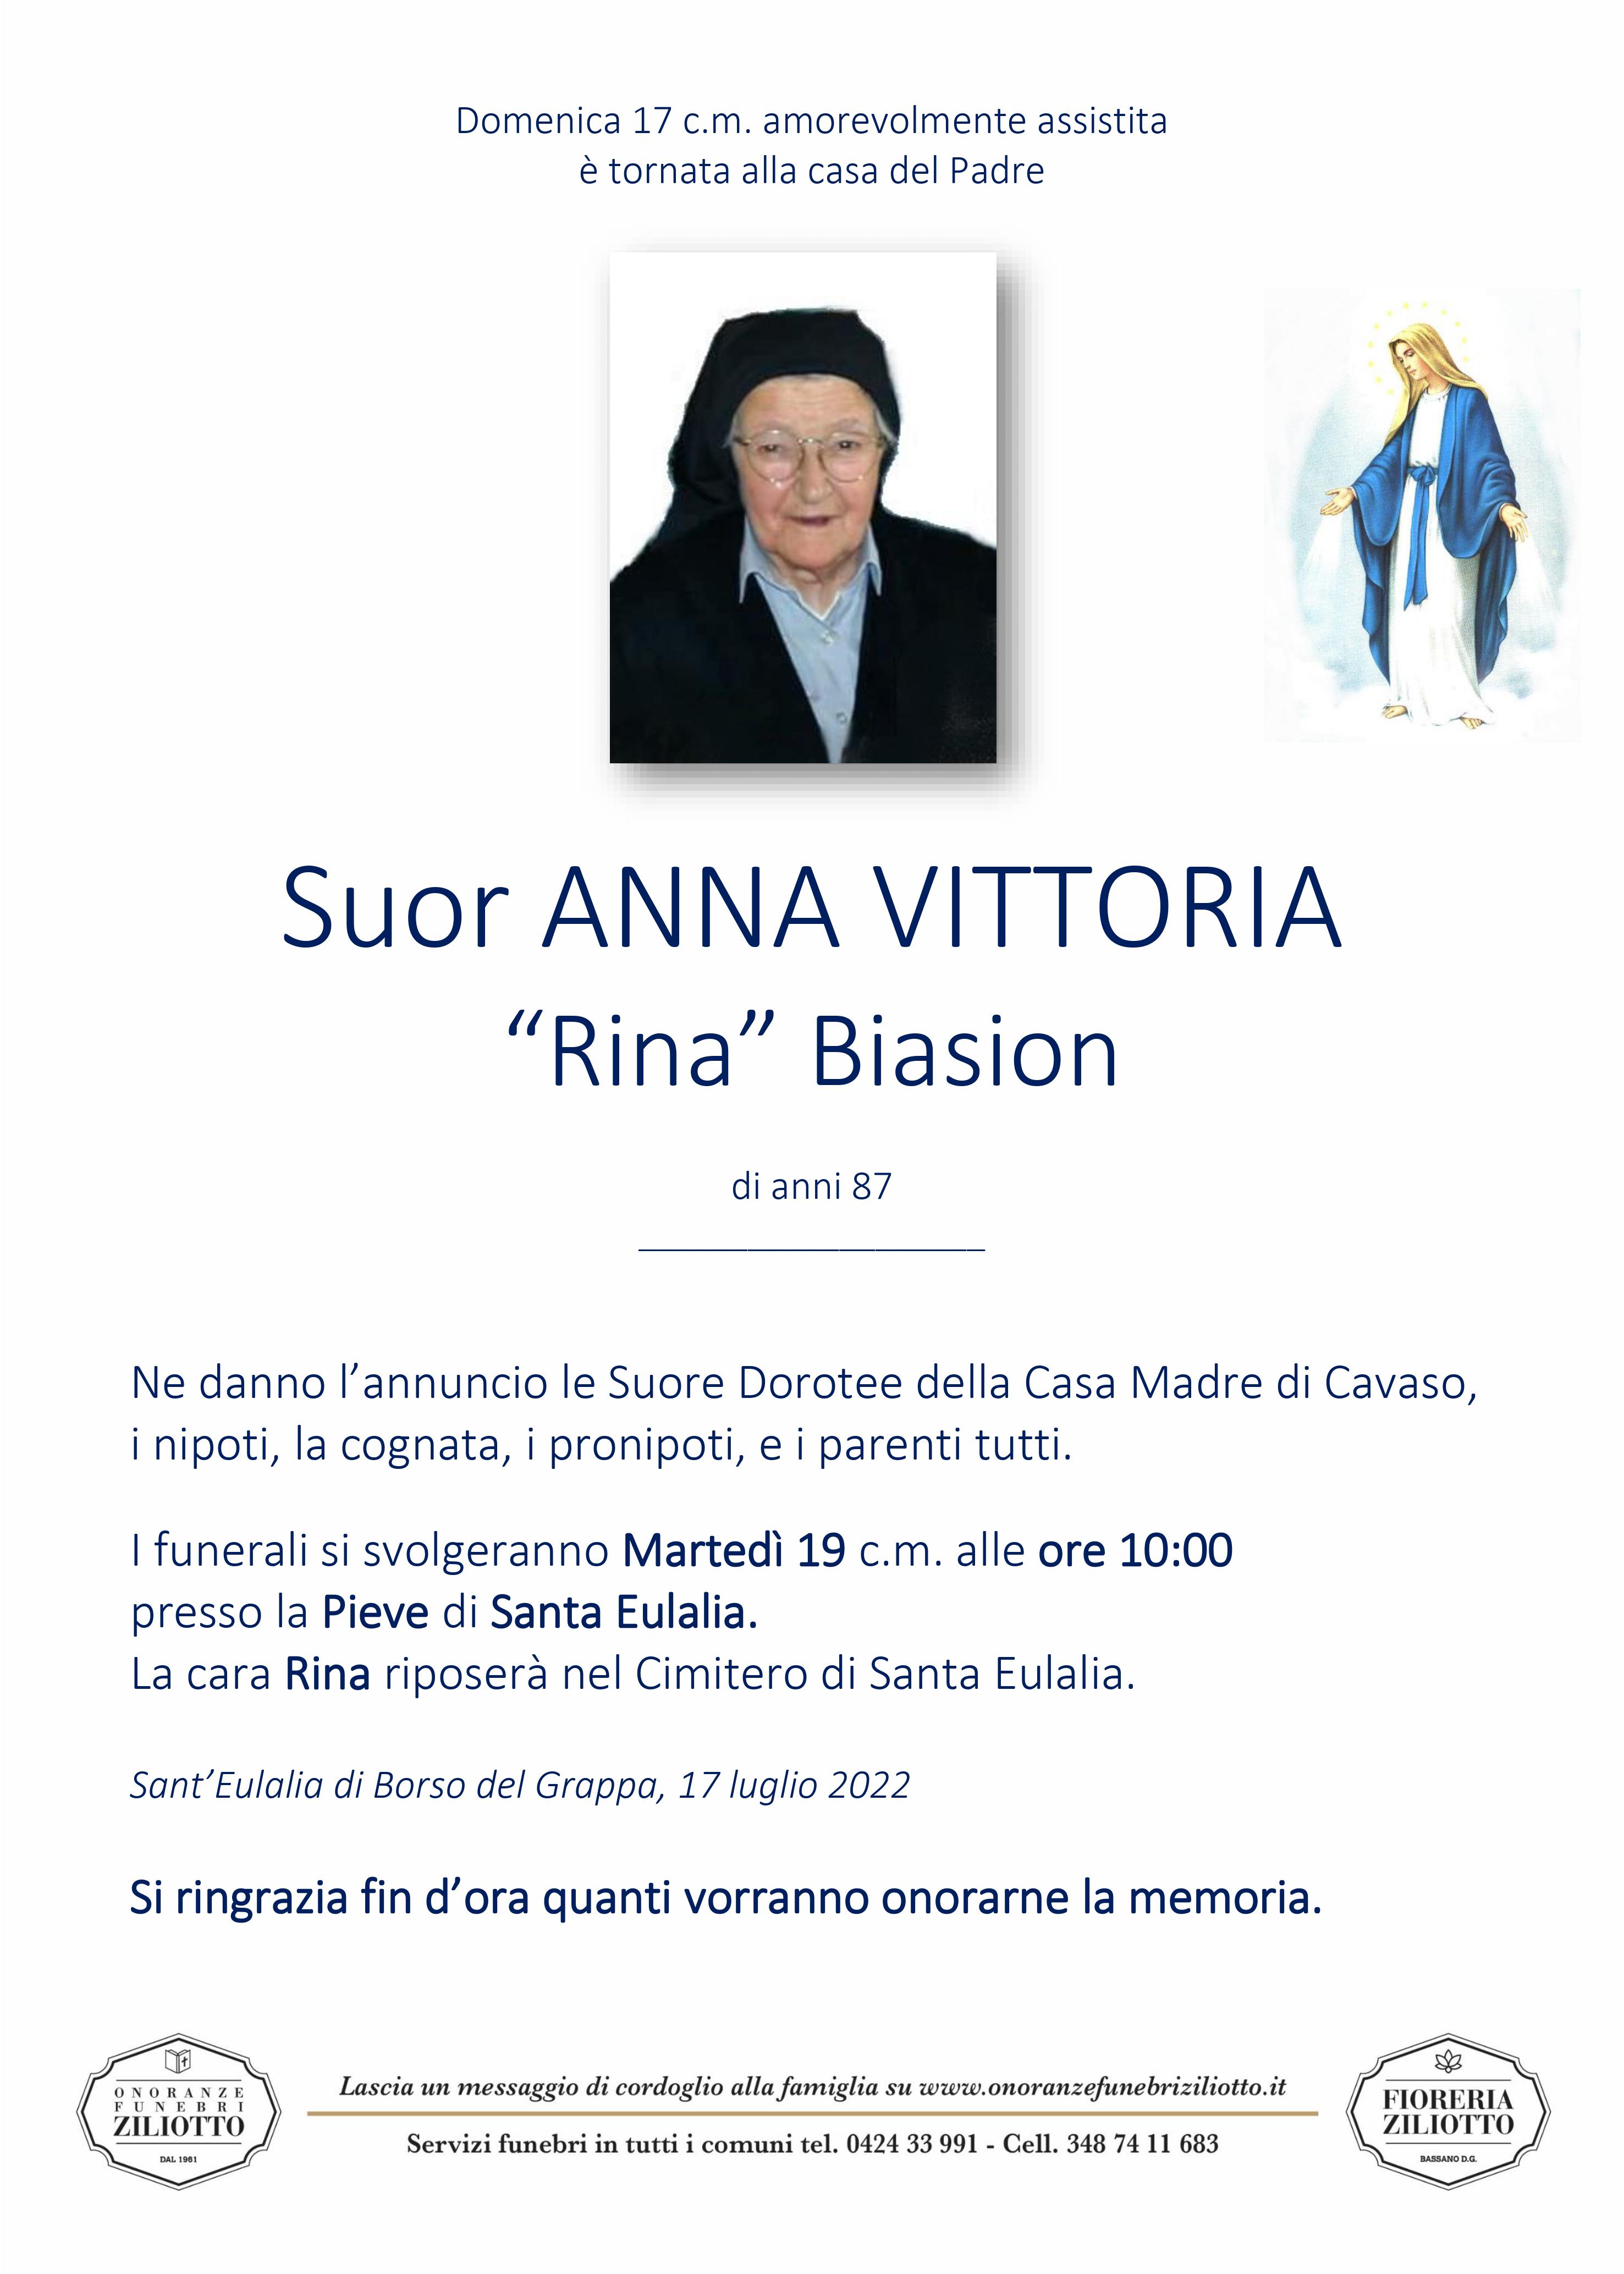 Suor Anna Vittorina Biasion - 87 anni - Borso del Grappa